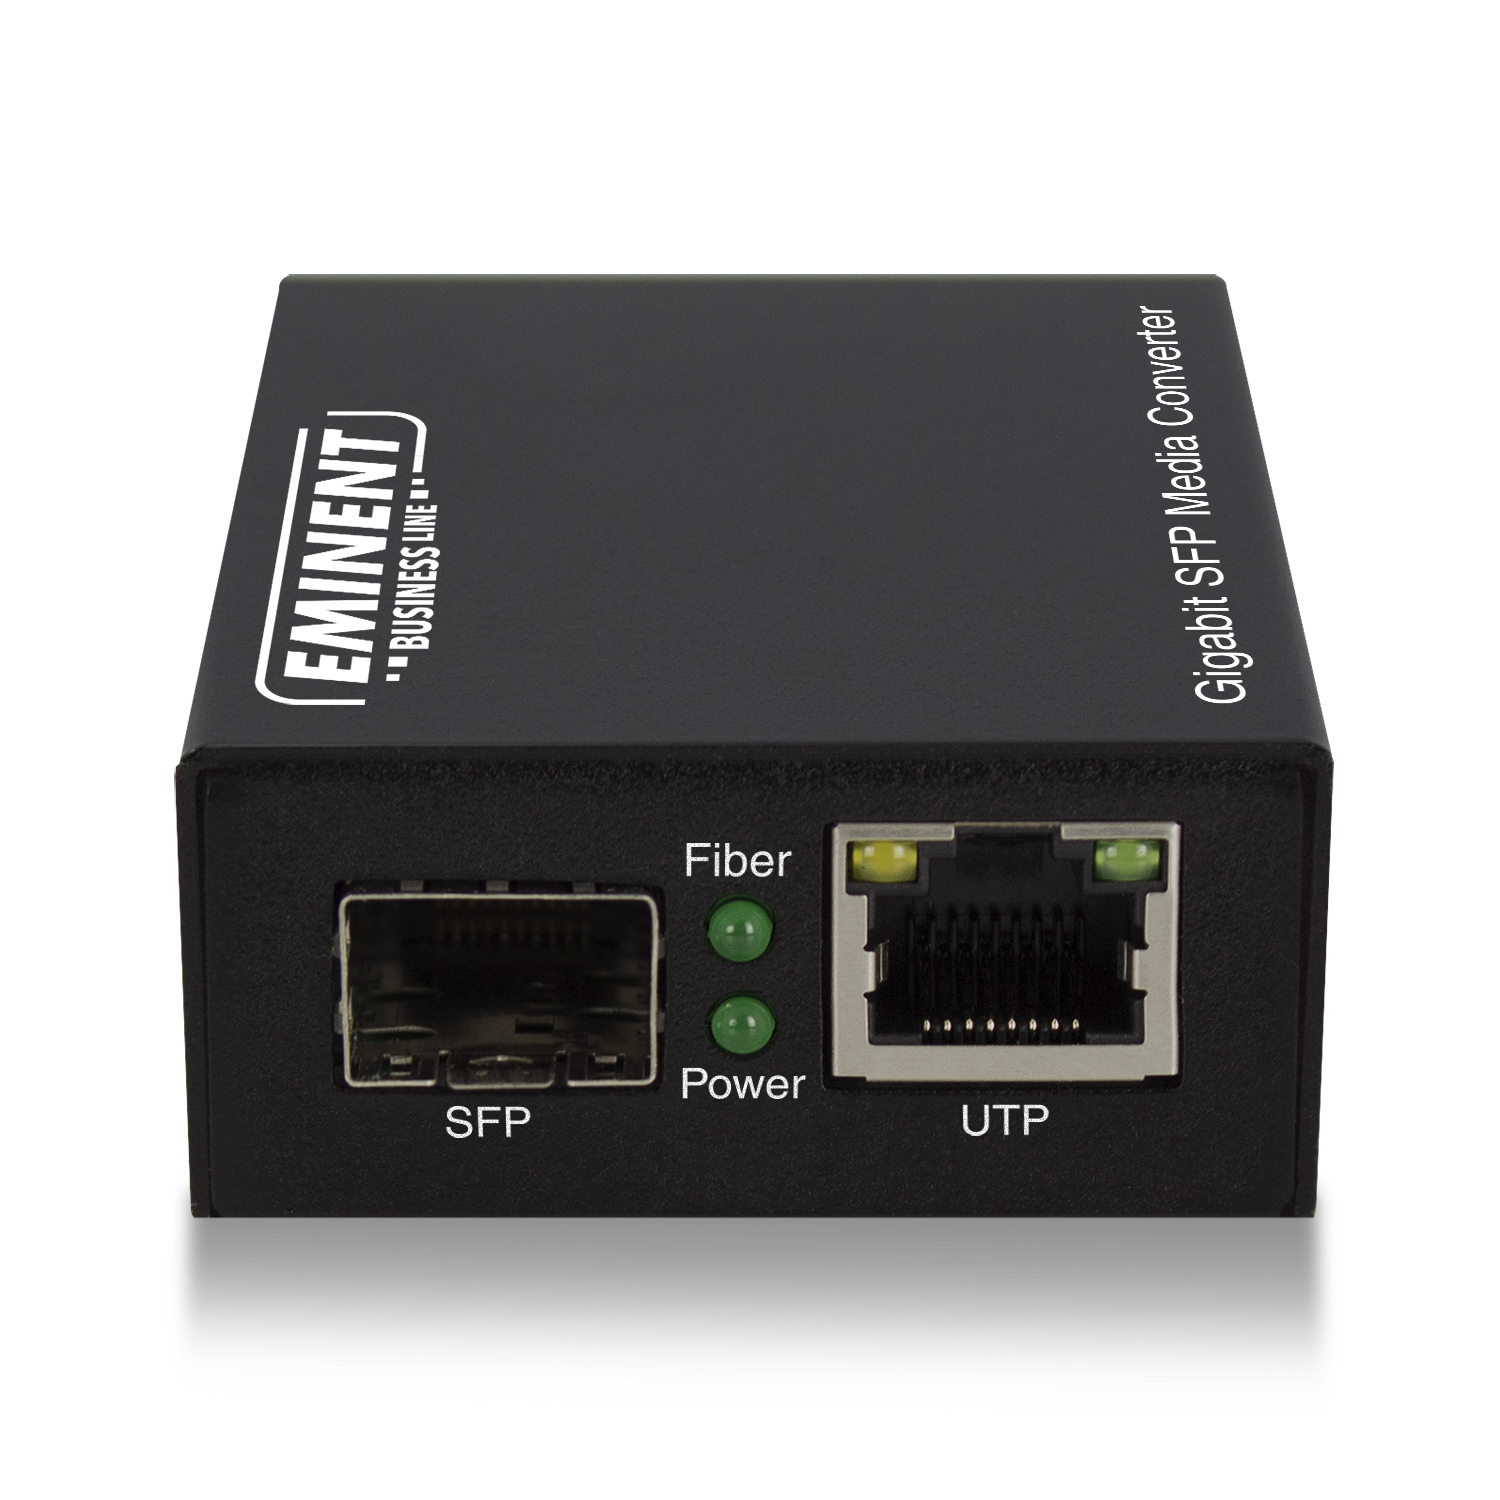 EM4005 | Convertitore multimediale SFP Gigabit | Eminent | distributori informatica